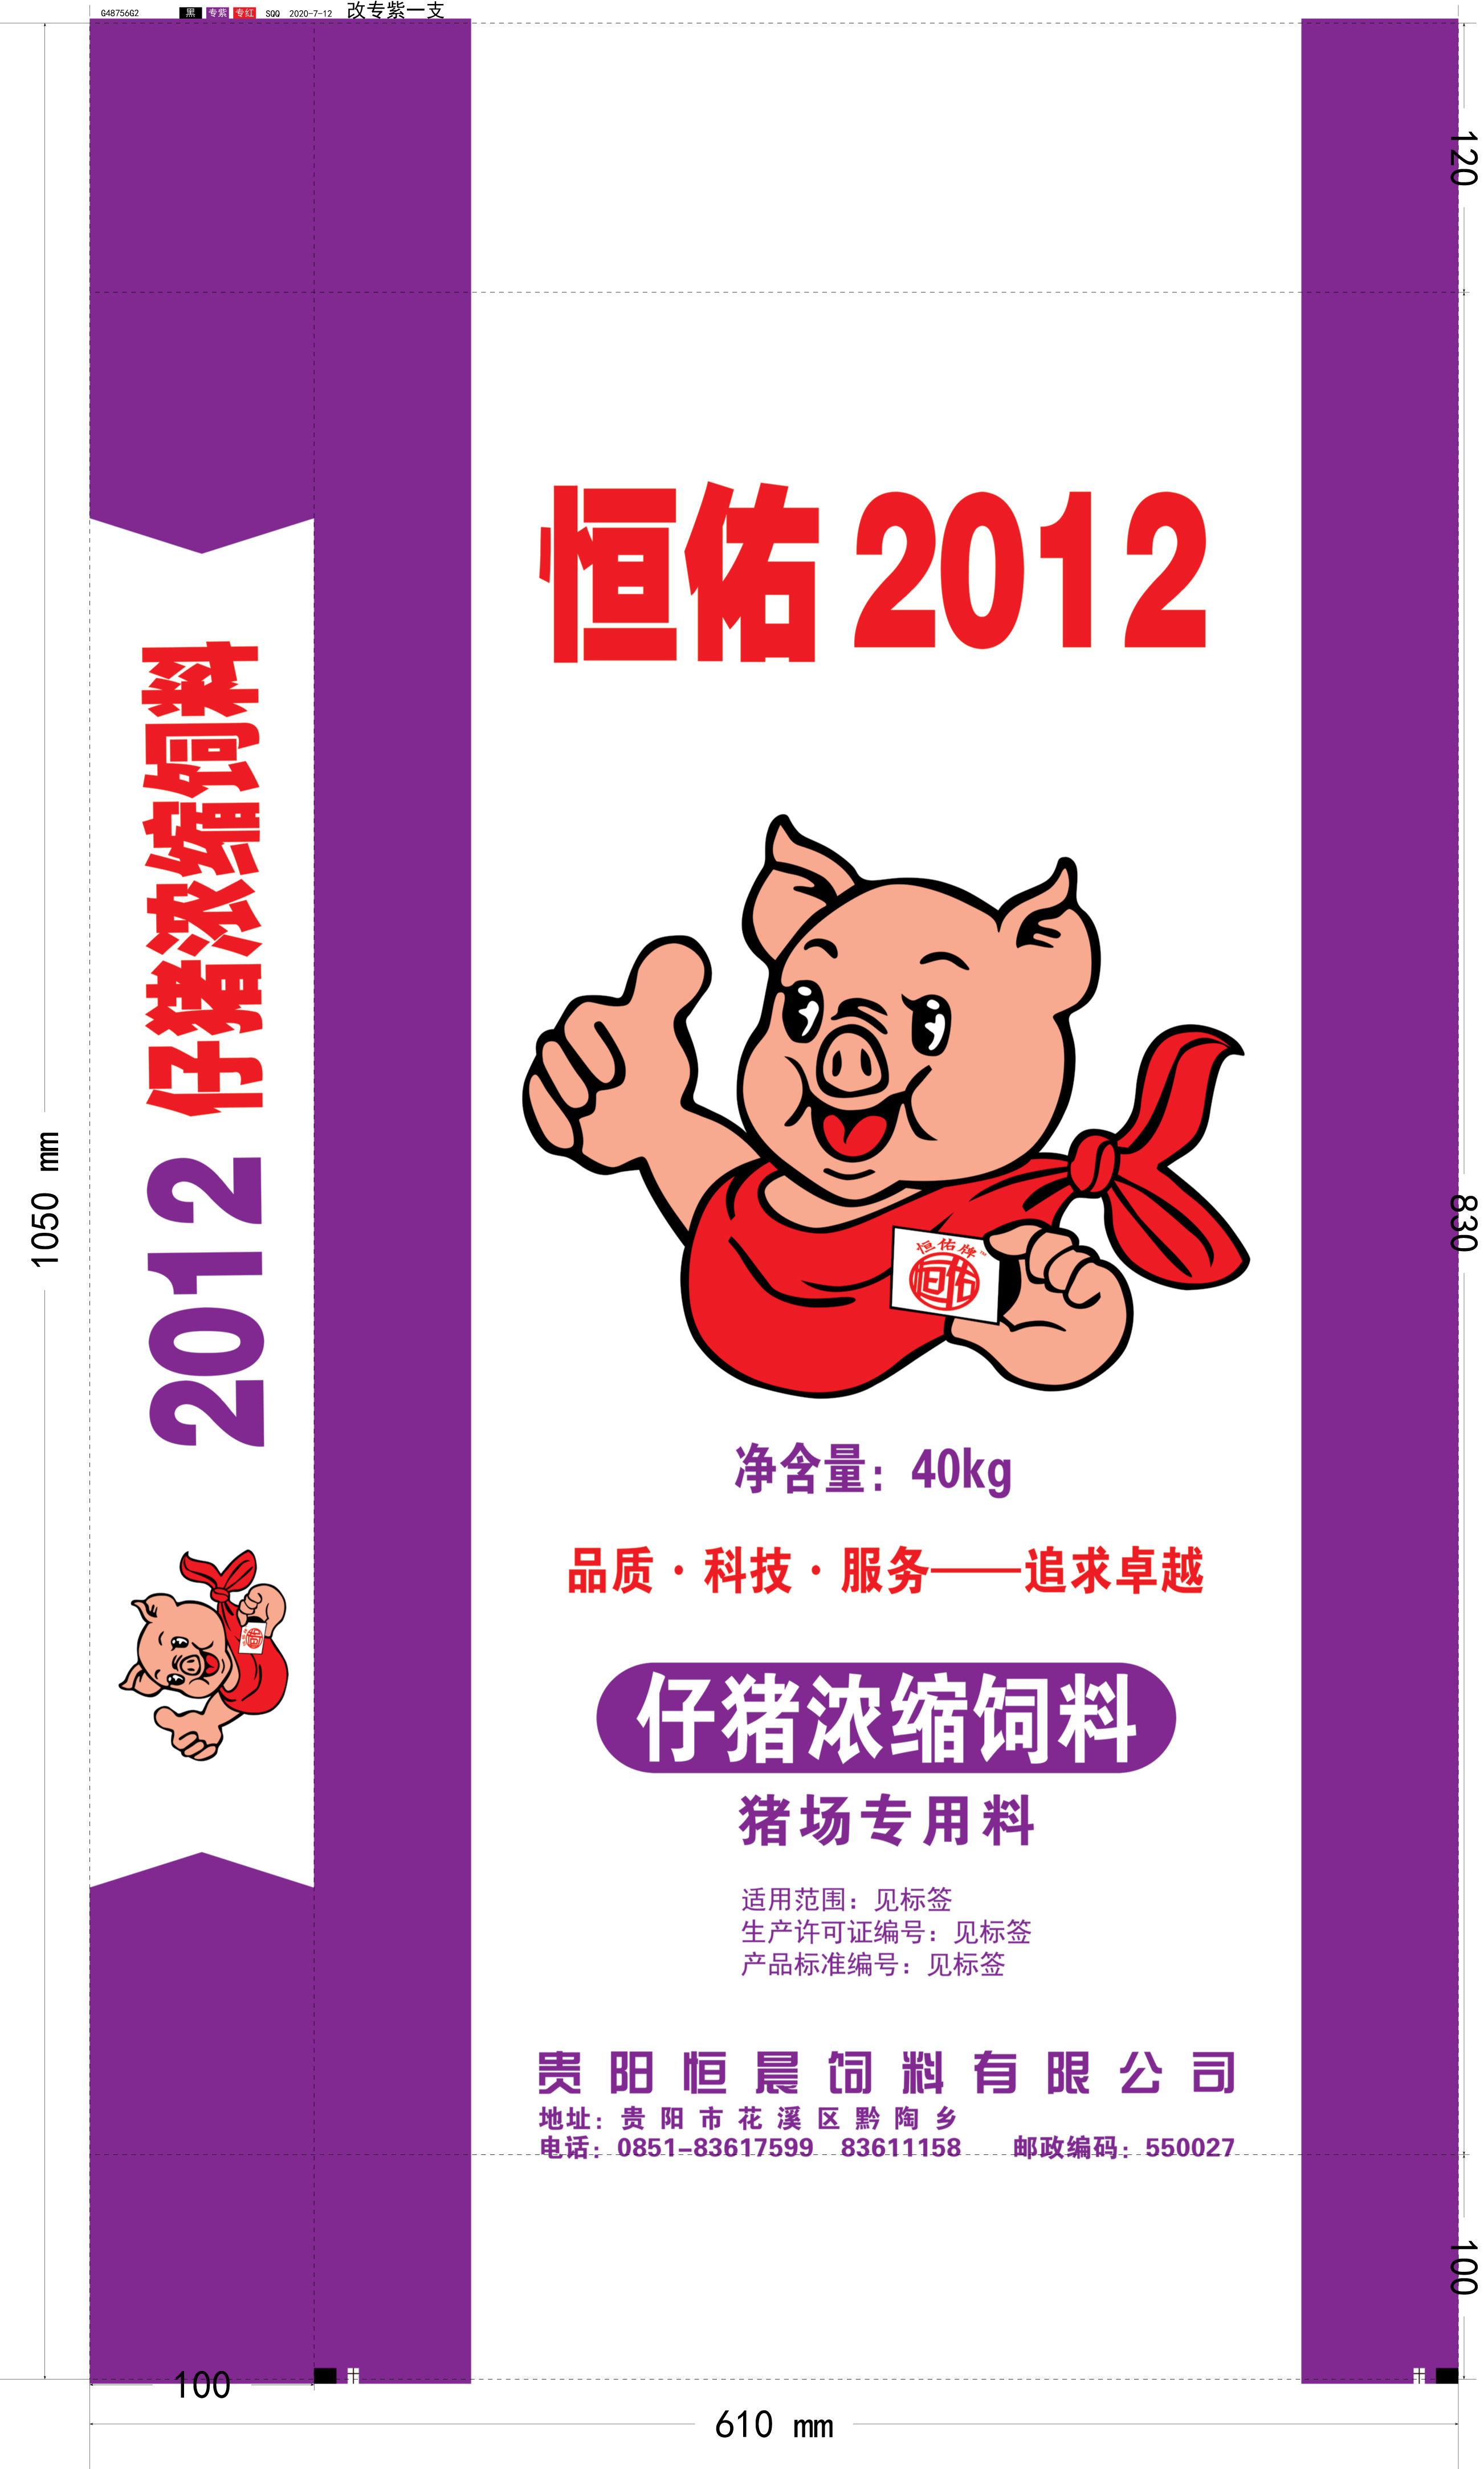 2012-仔豬濃縮飼料